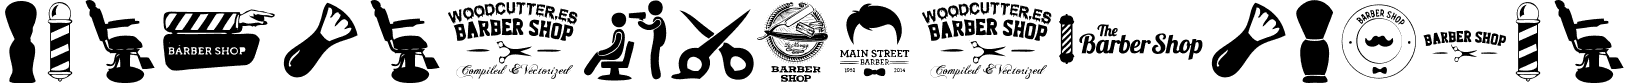 Barber Shop Regular Barber Shop.ttf